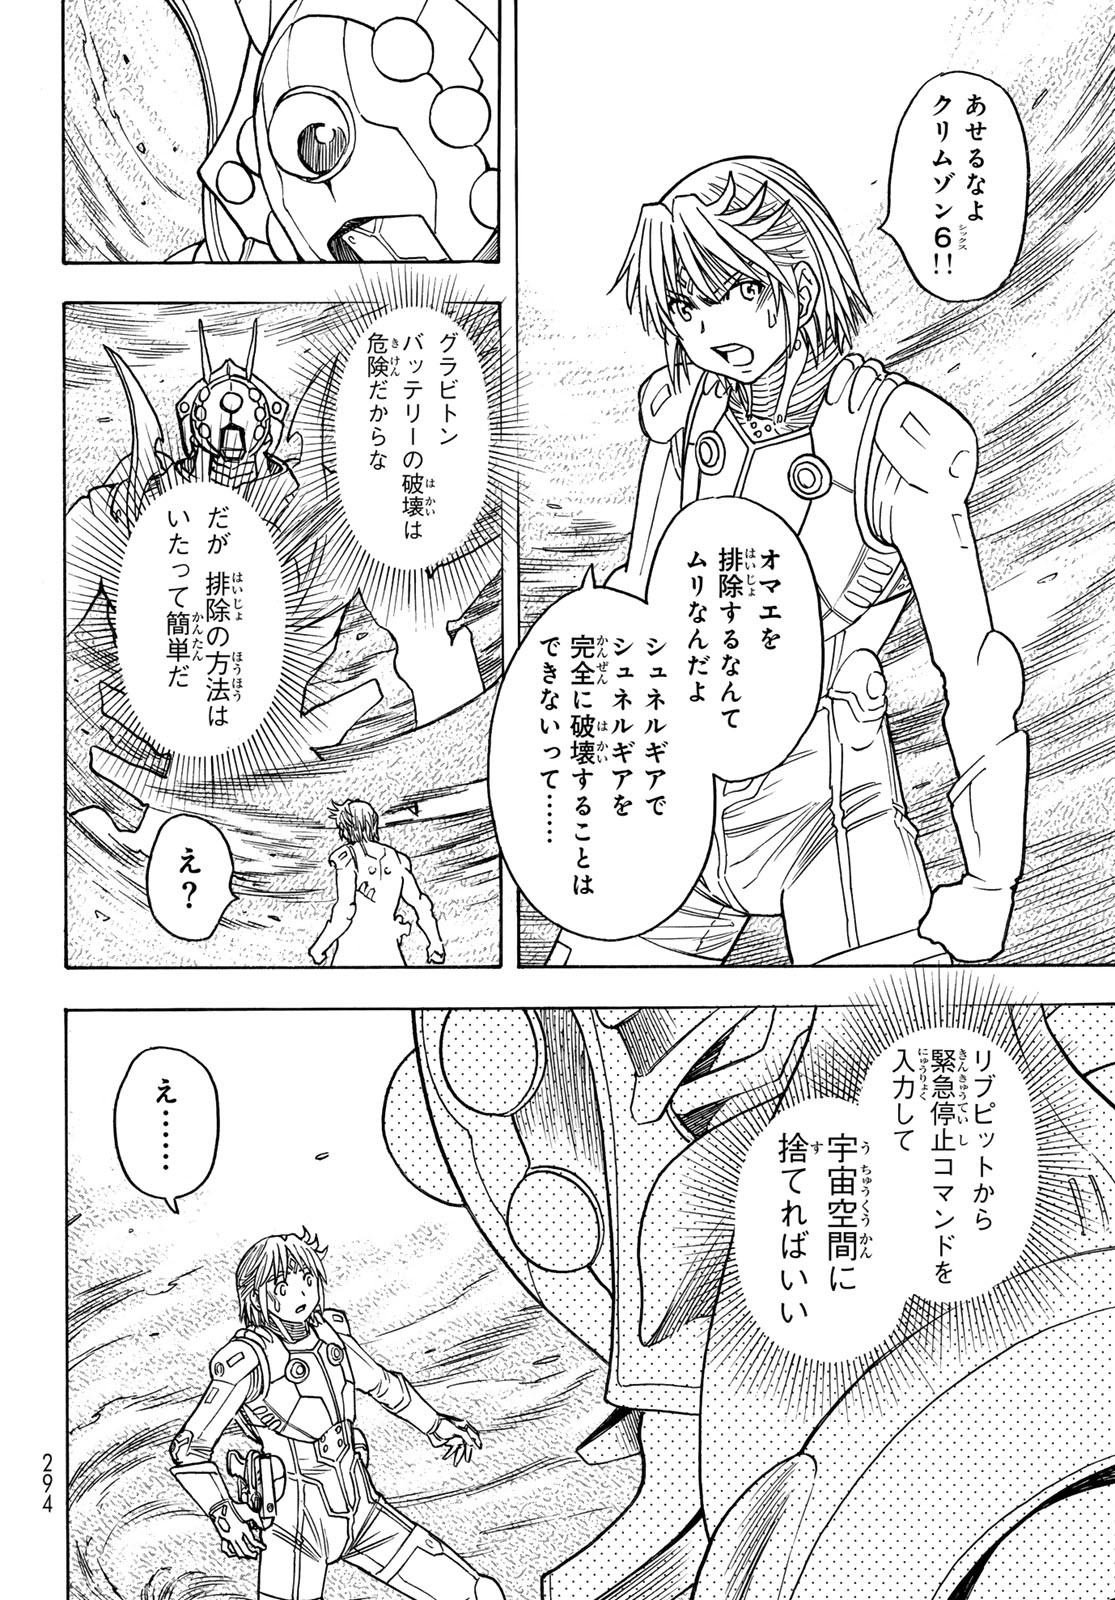 Mugou no Schnell Gear: Chikyuugai Kisouka AI - Chapter 51 - Page 10